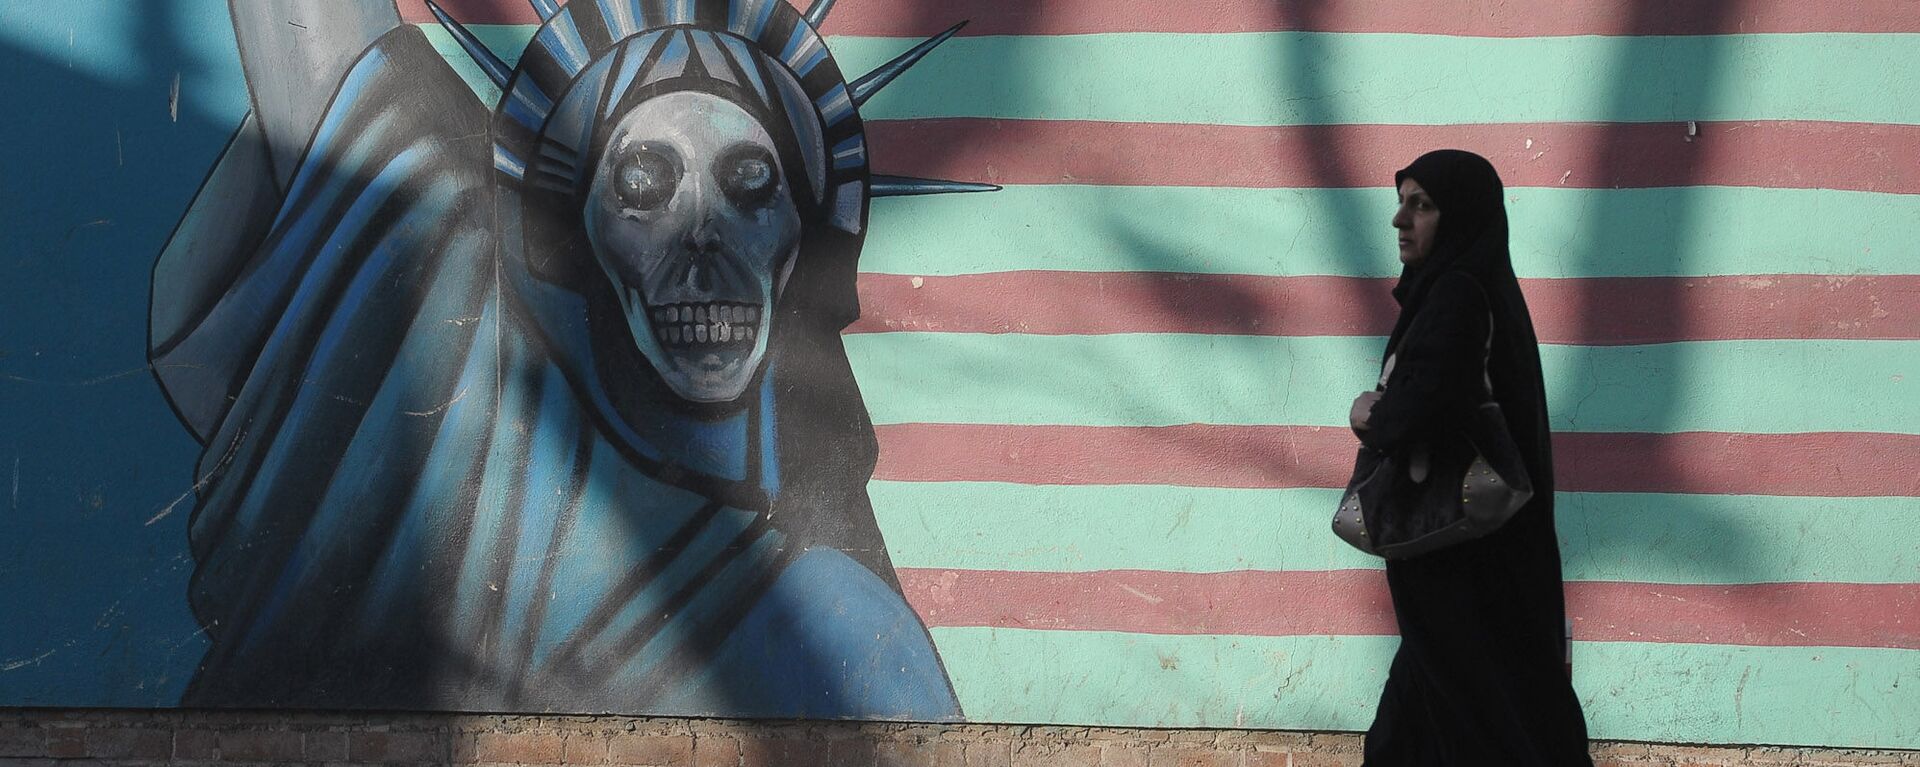 Граффити на стене бывшего посольства США в Тегеране. - Sputnik Армения, 1920, 01.03.2021